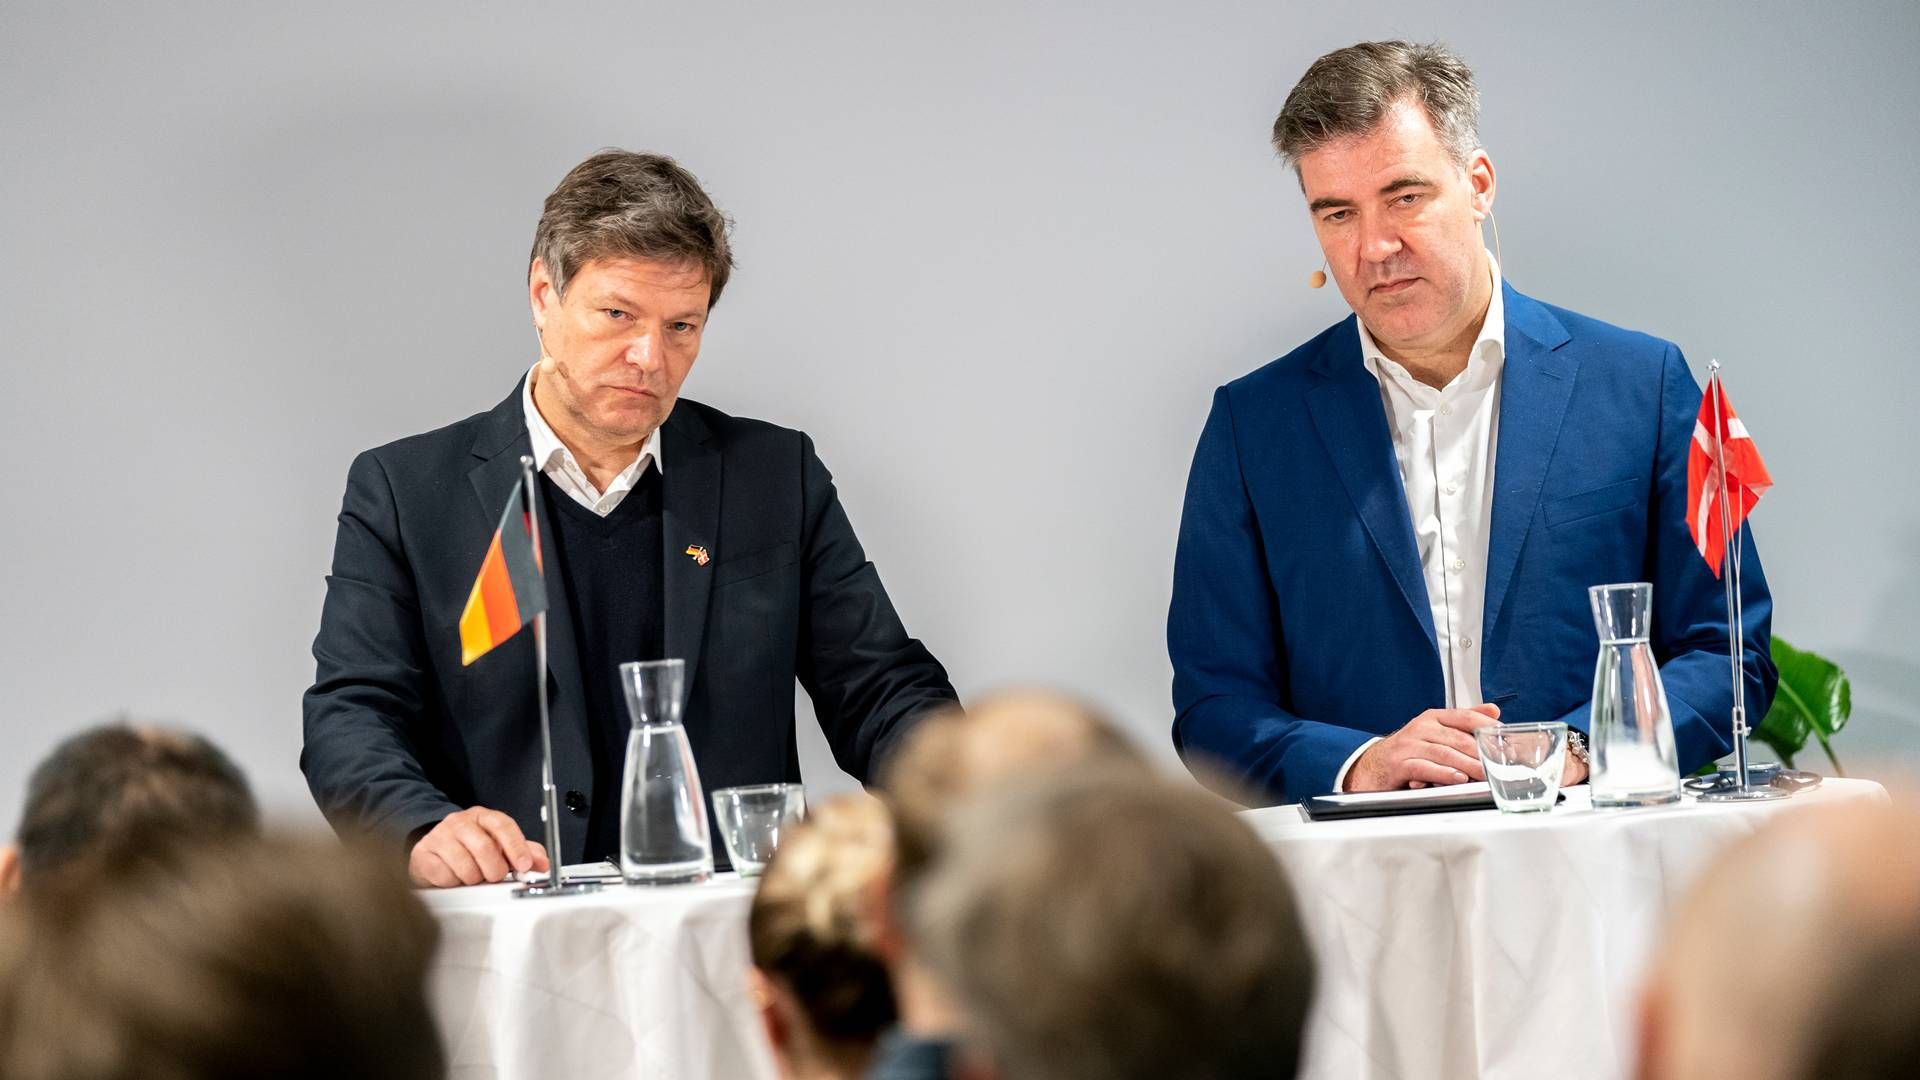 Den danske energiminister Lars Aagaard (M) og hans tyske kollega, Robert Habeck, er på samme hold i spørgsmålet om at få blandet atomkraft ind i vedvarende energi, som EU's energiministre debatterer tirsdag. | Foto: Ida Marie Odgaard/Ritzau Scanpix